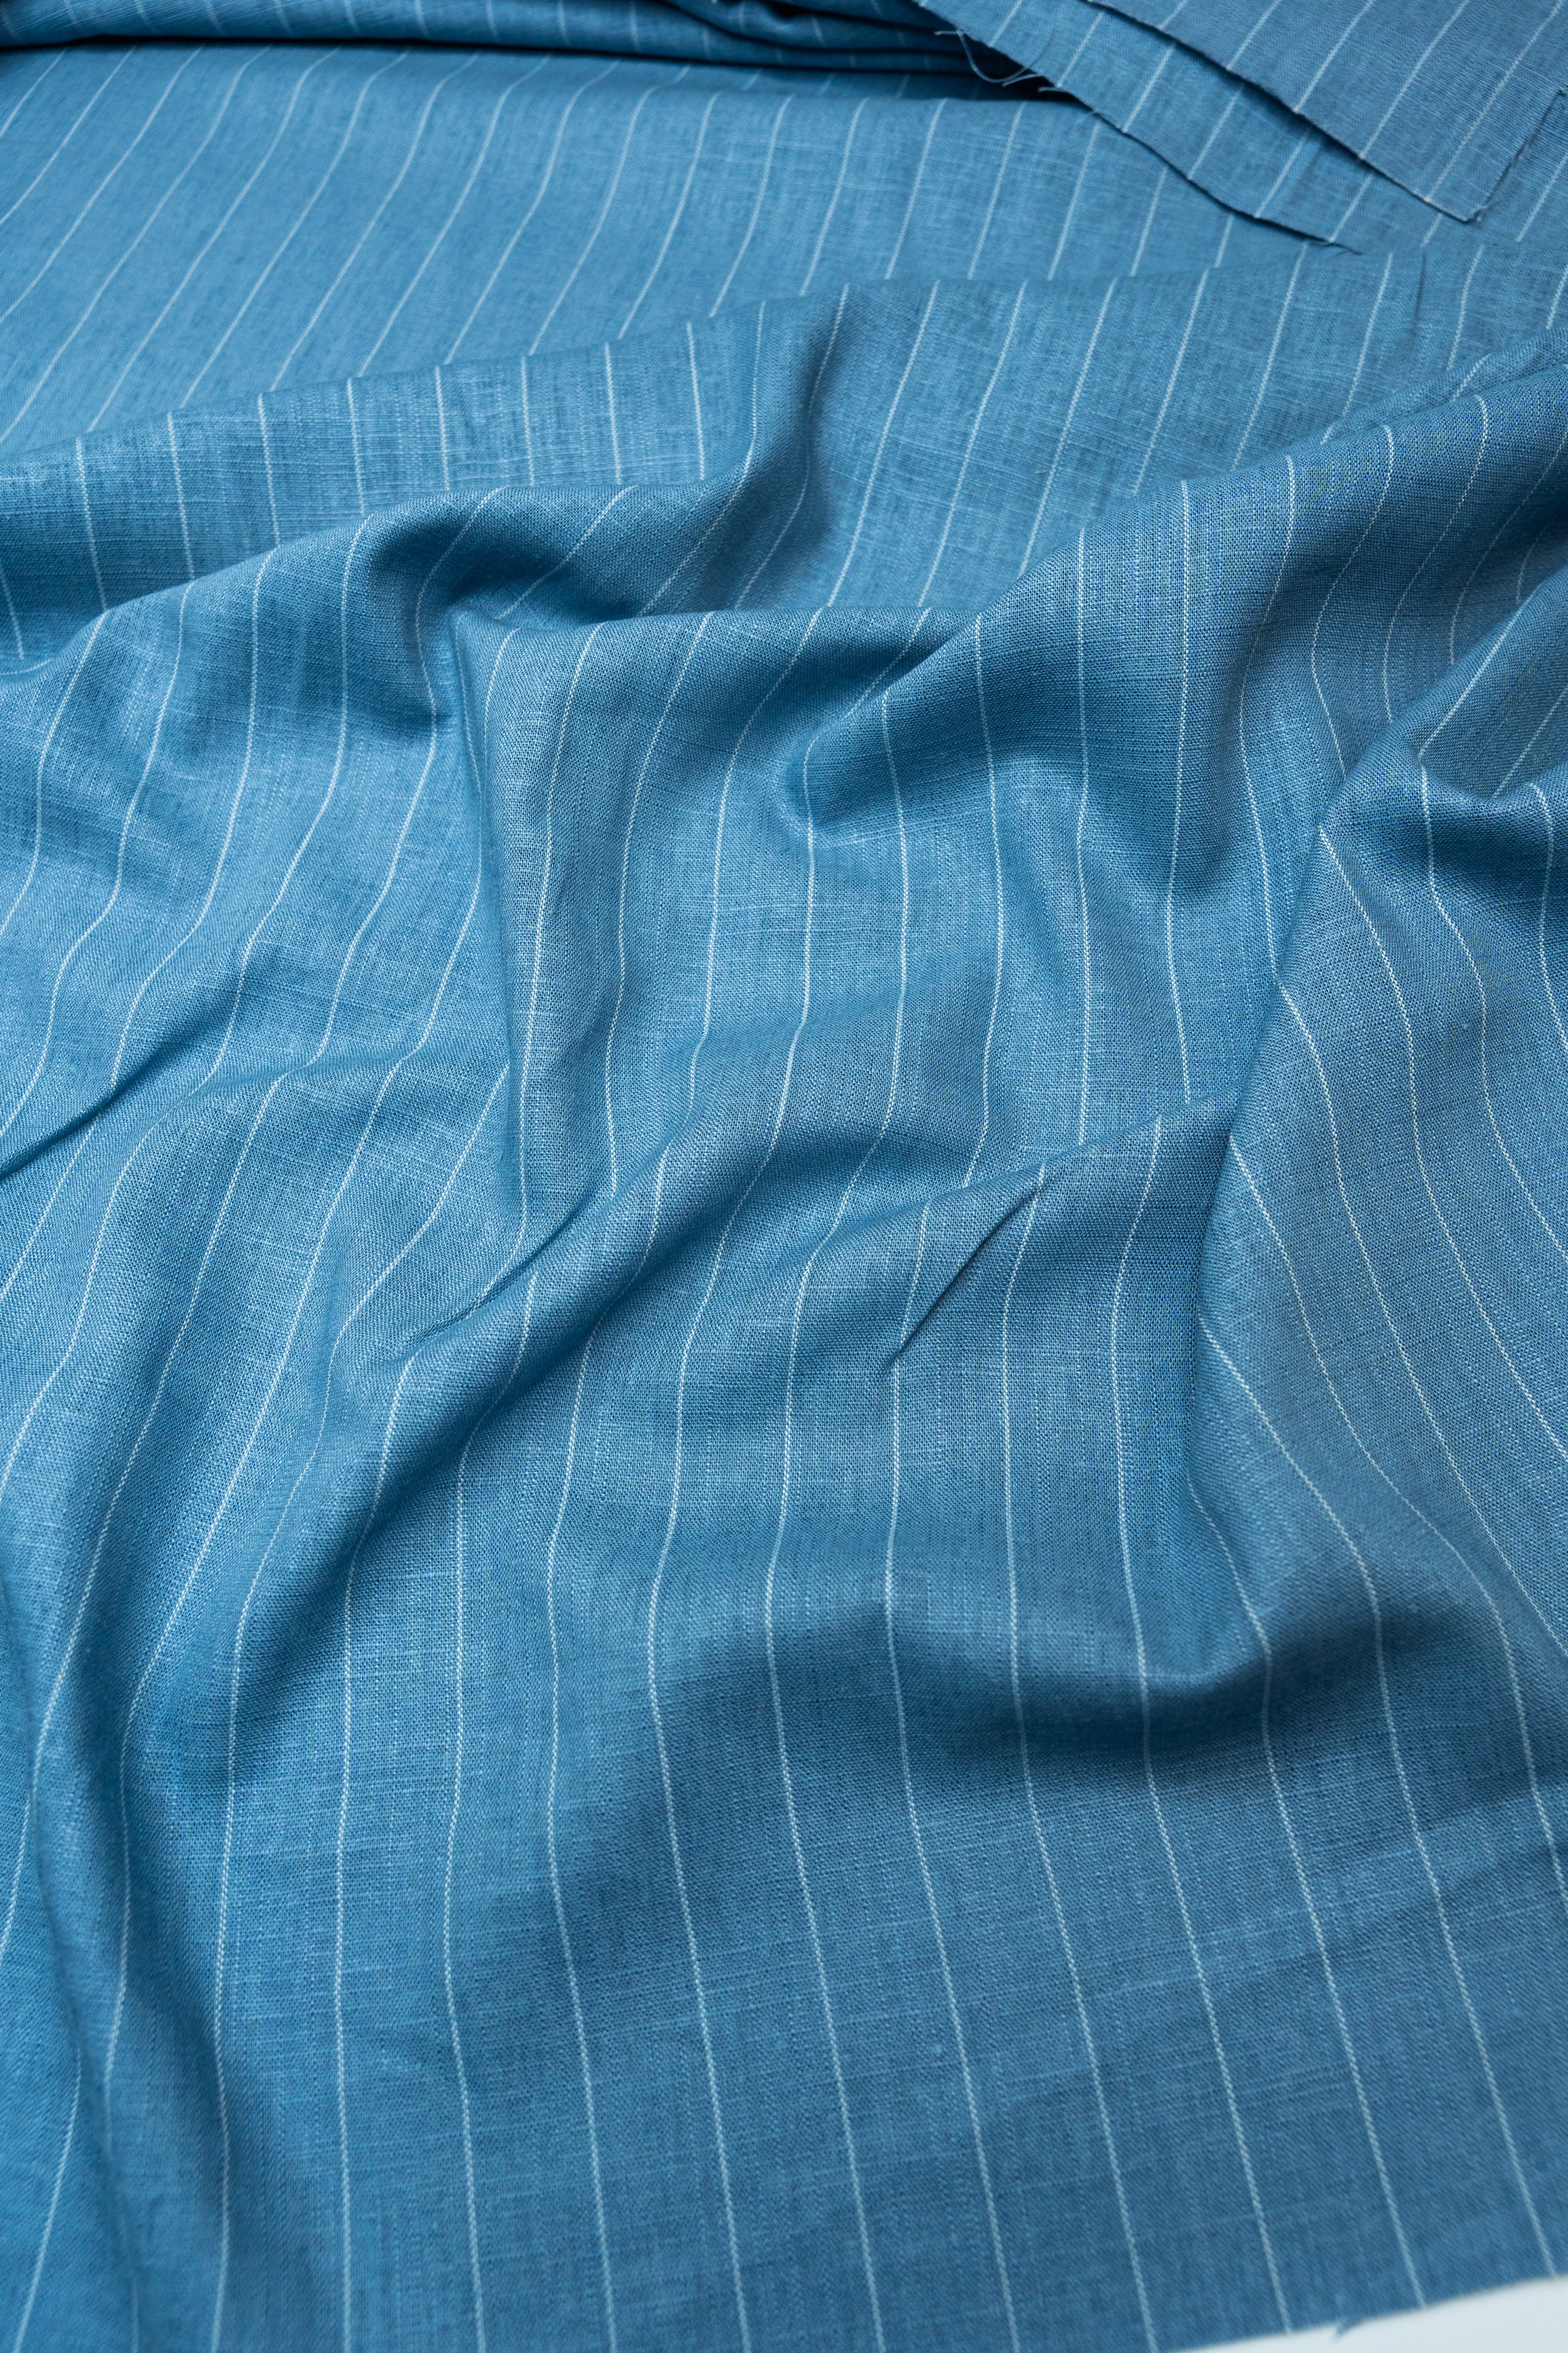 Льон фактурний з еластаном Stripe 805 Синій 1м